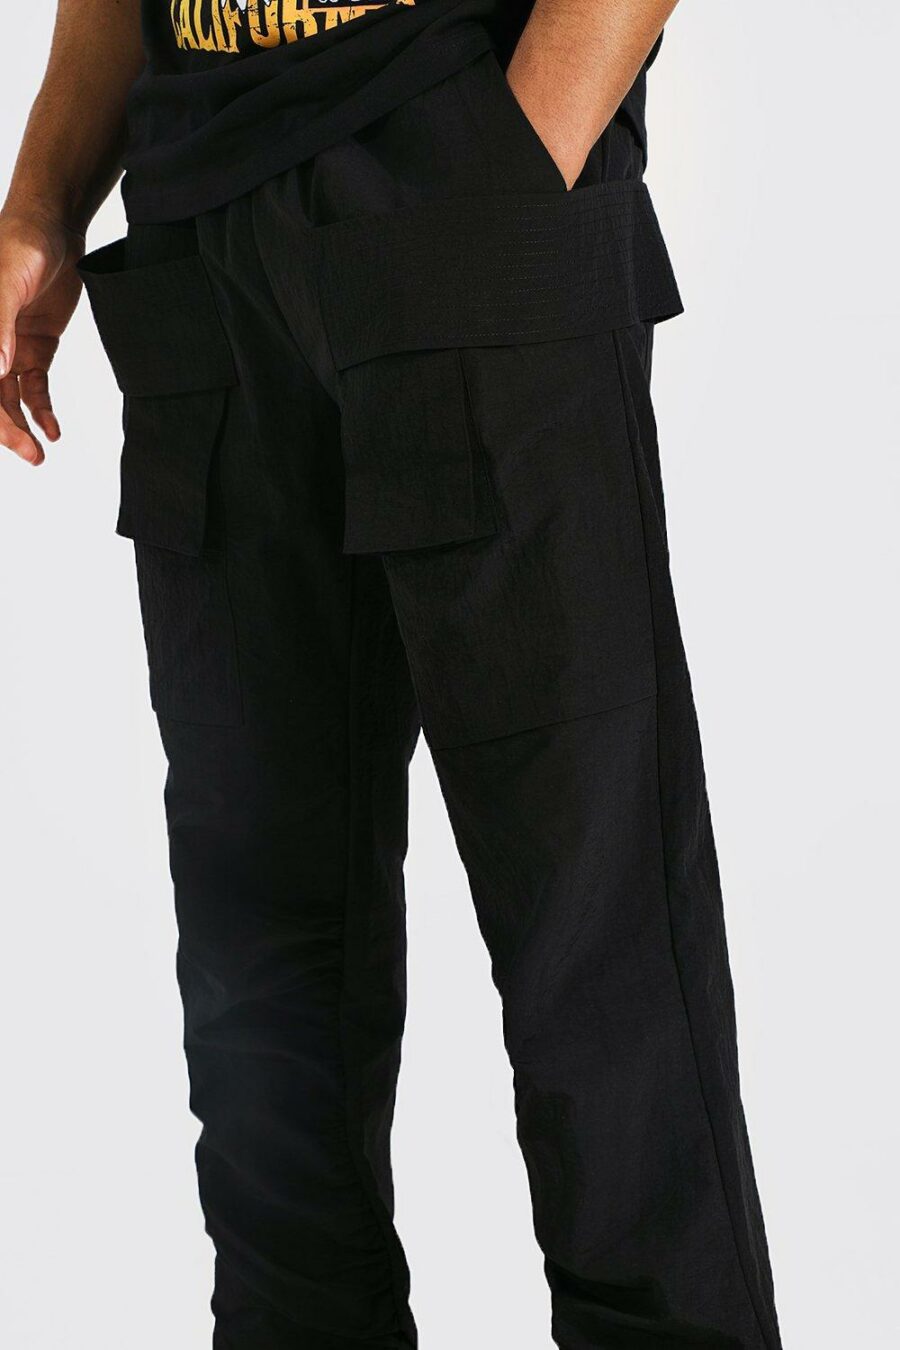 BoohooMan-czarne-meskie-spodnie-z-kieszeniami--M